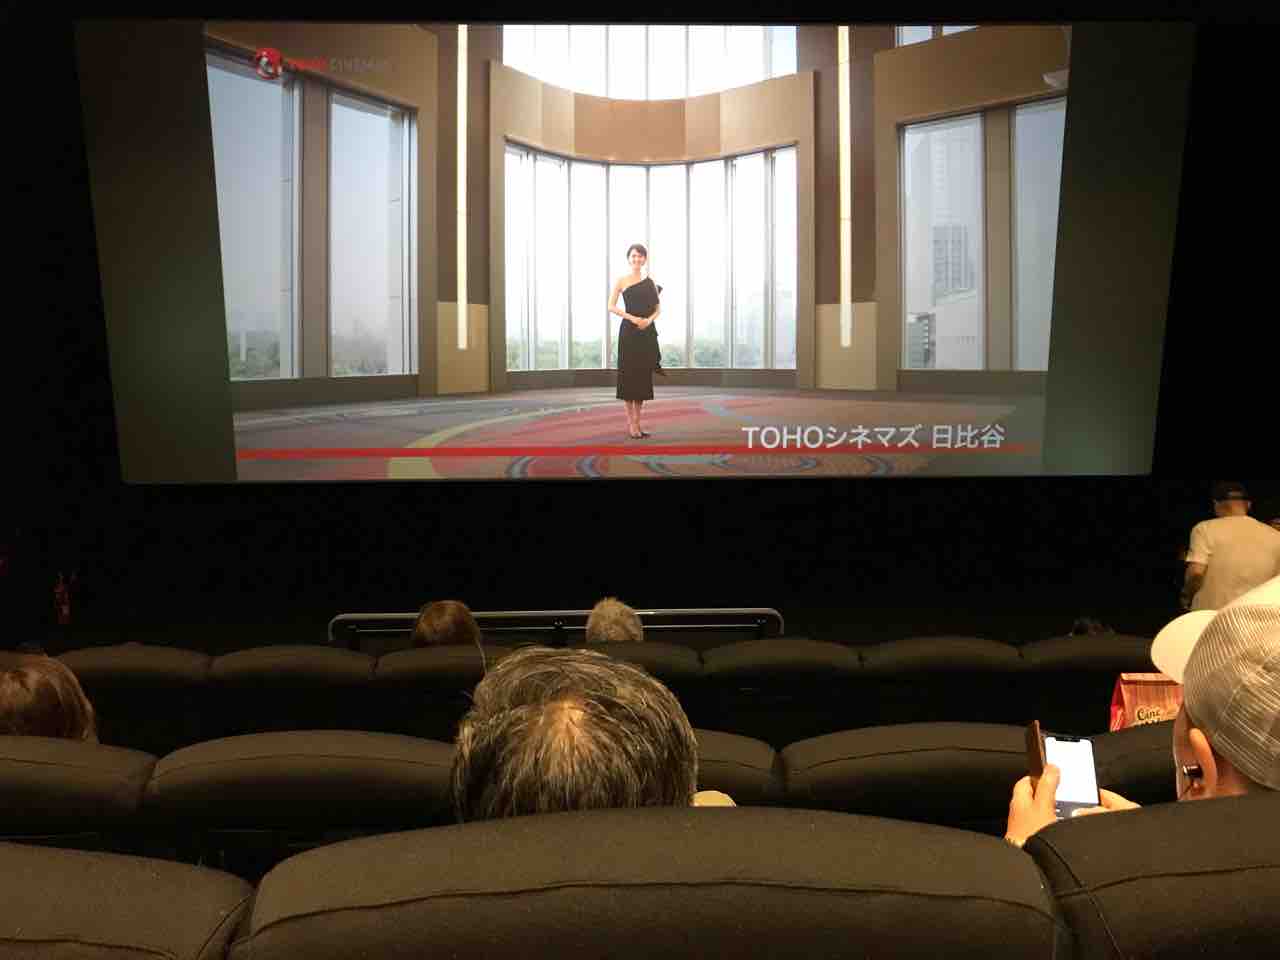 Tohoシネマズ上野 スクリーン5 座席表のおすすめの見やすい席 トーキョー映画館番長